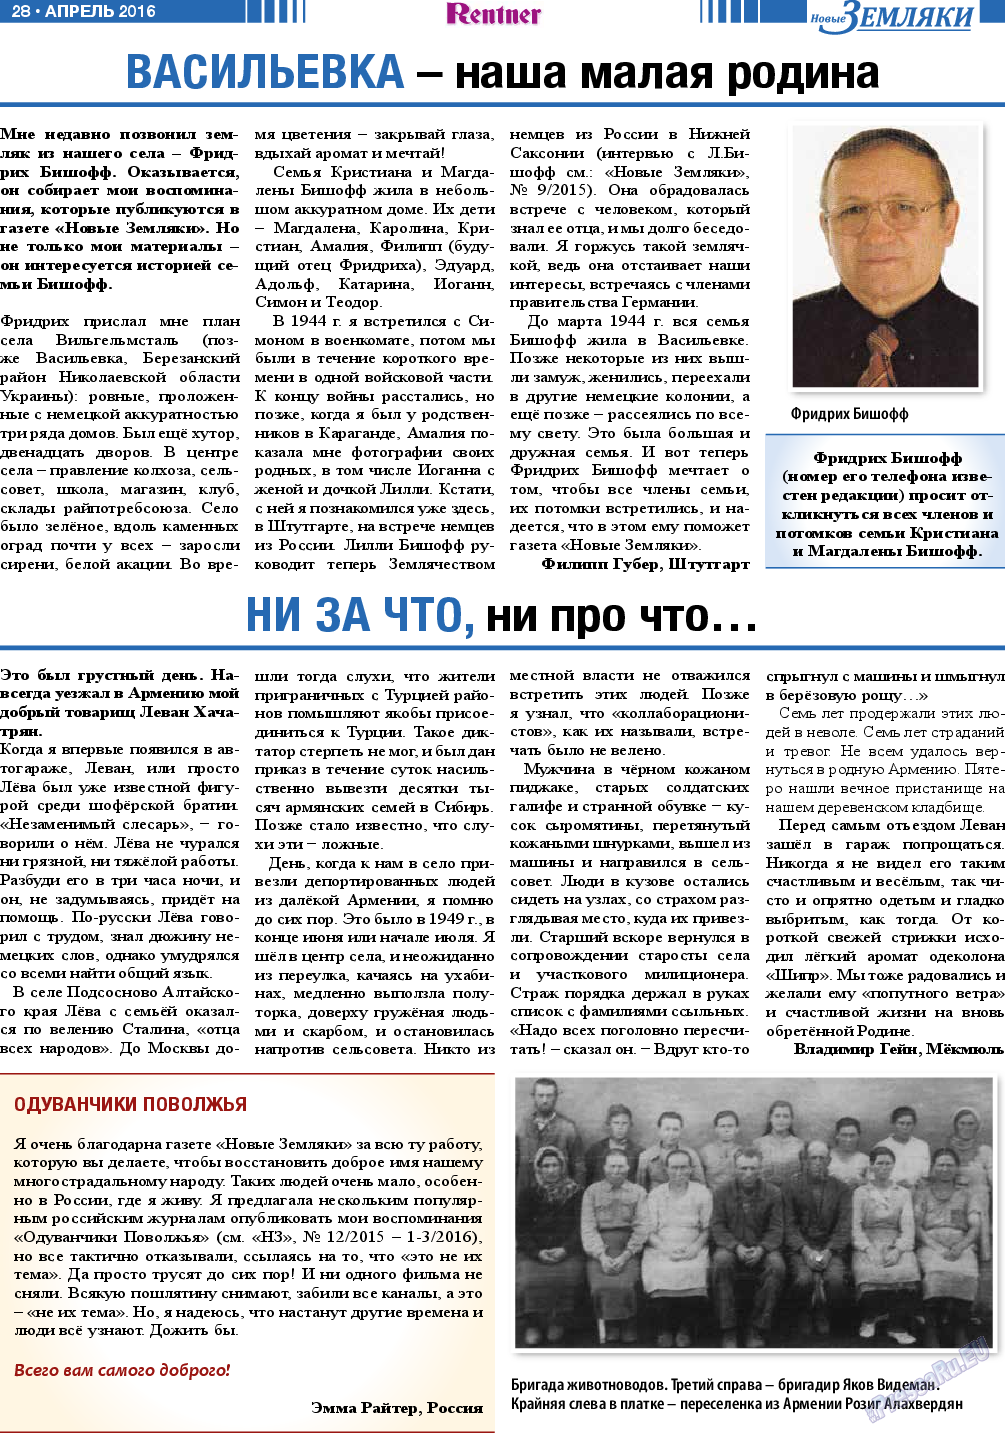 Новые Земляки, газета. 2016 №4 стр.28